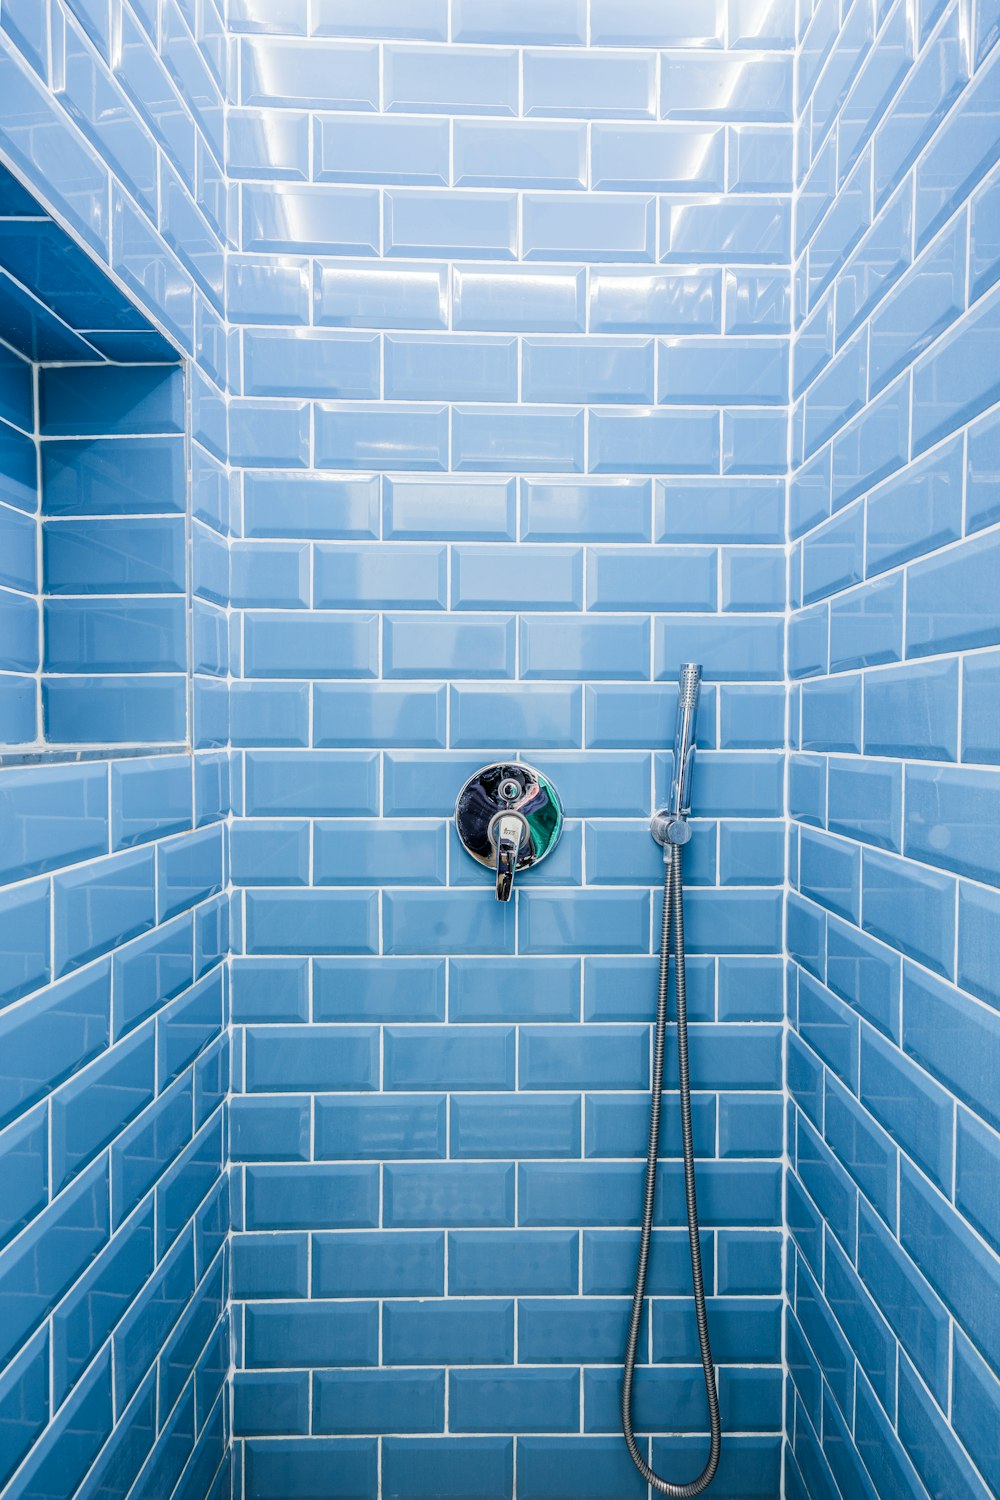 Bathroom Tile Pictures Download Free Images On Unsplash